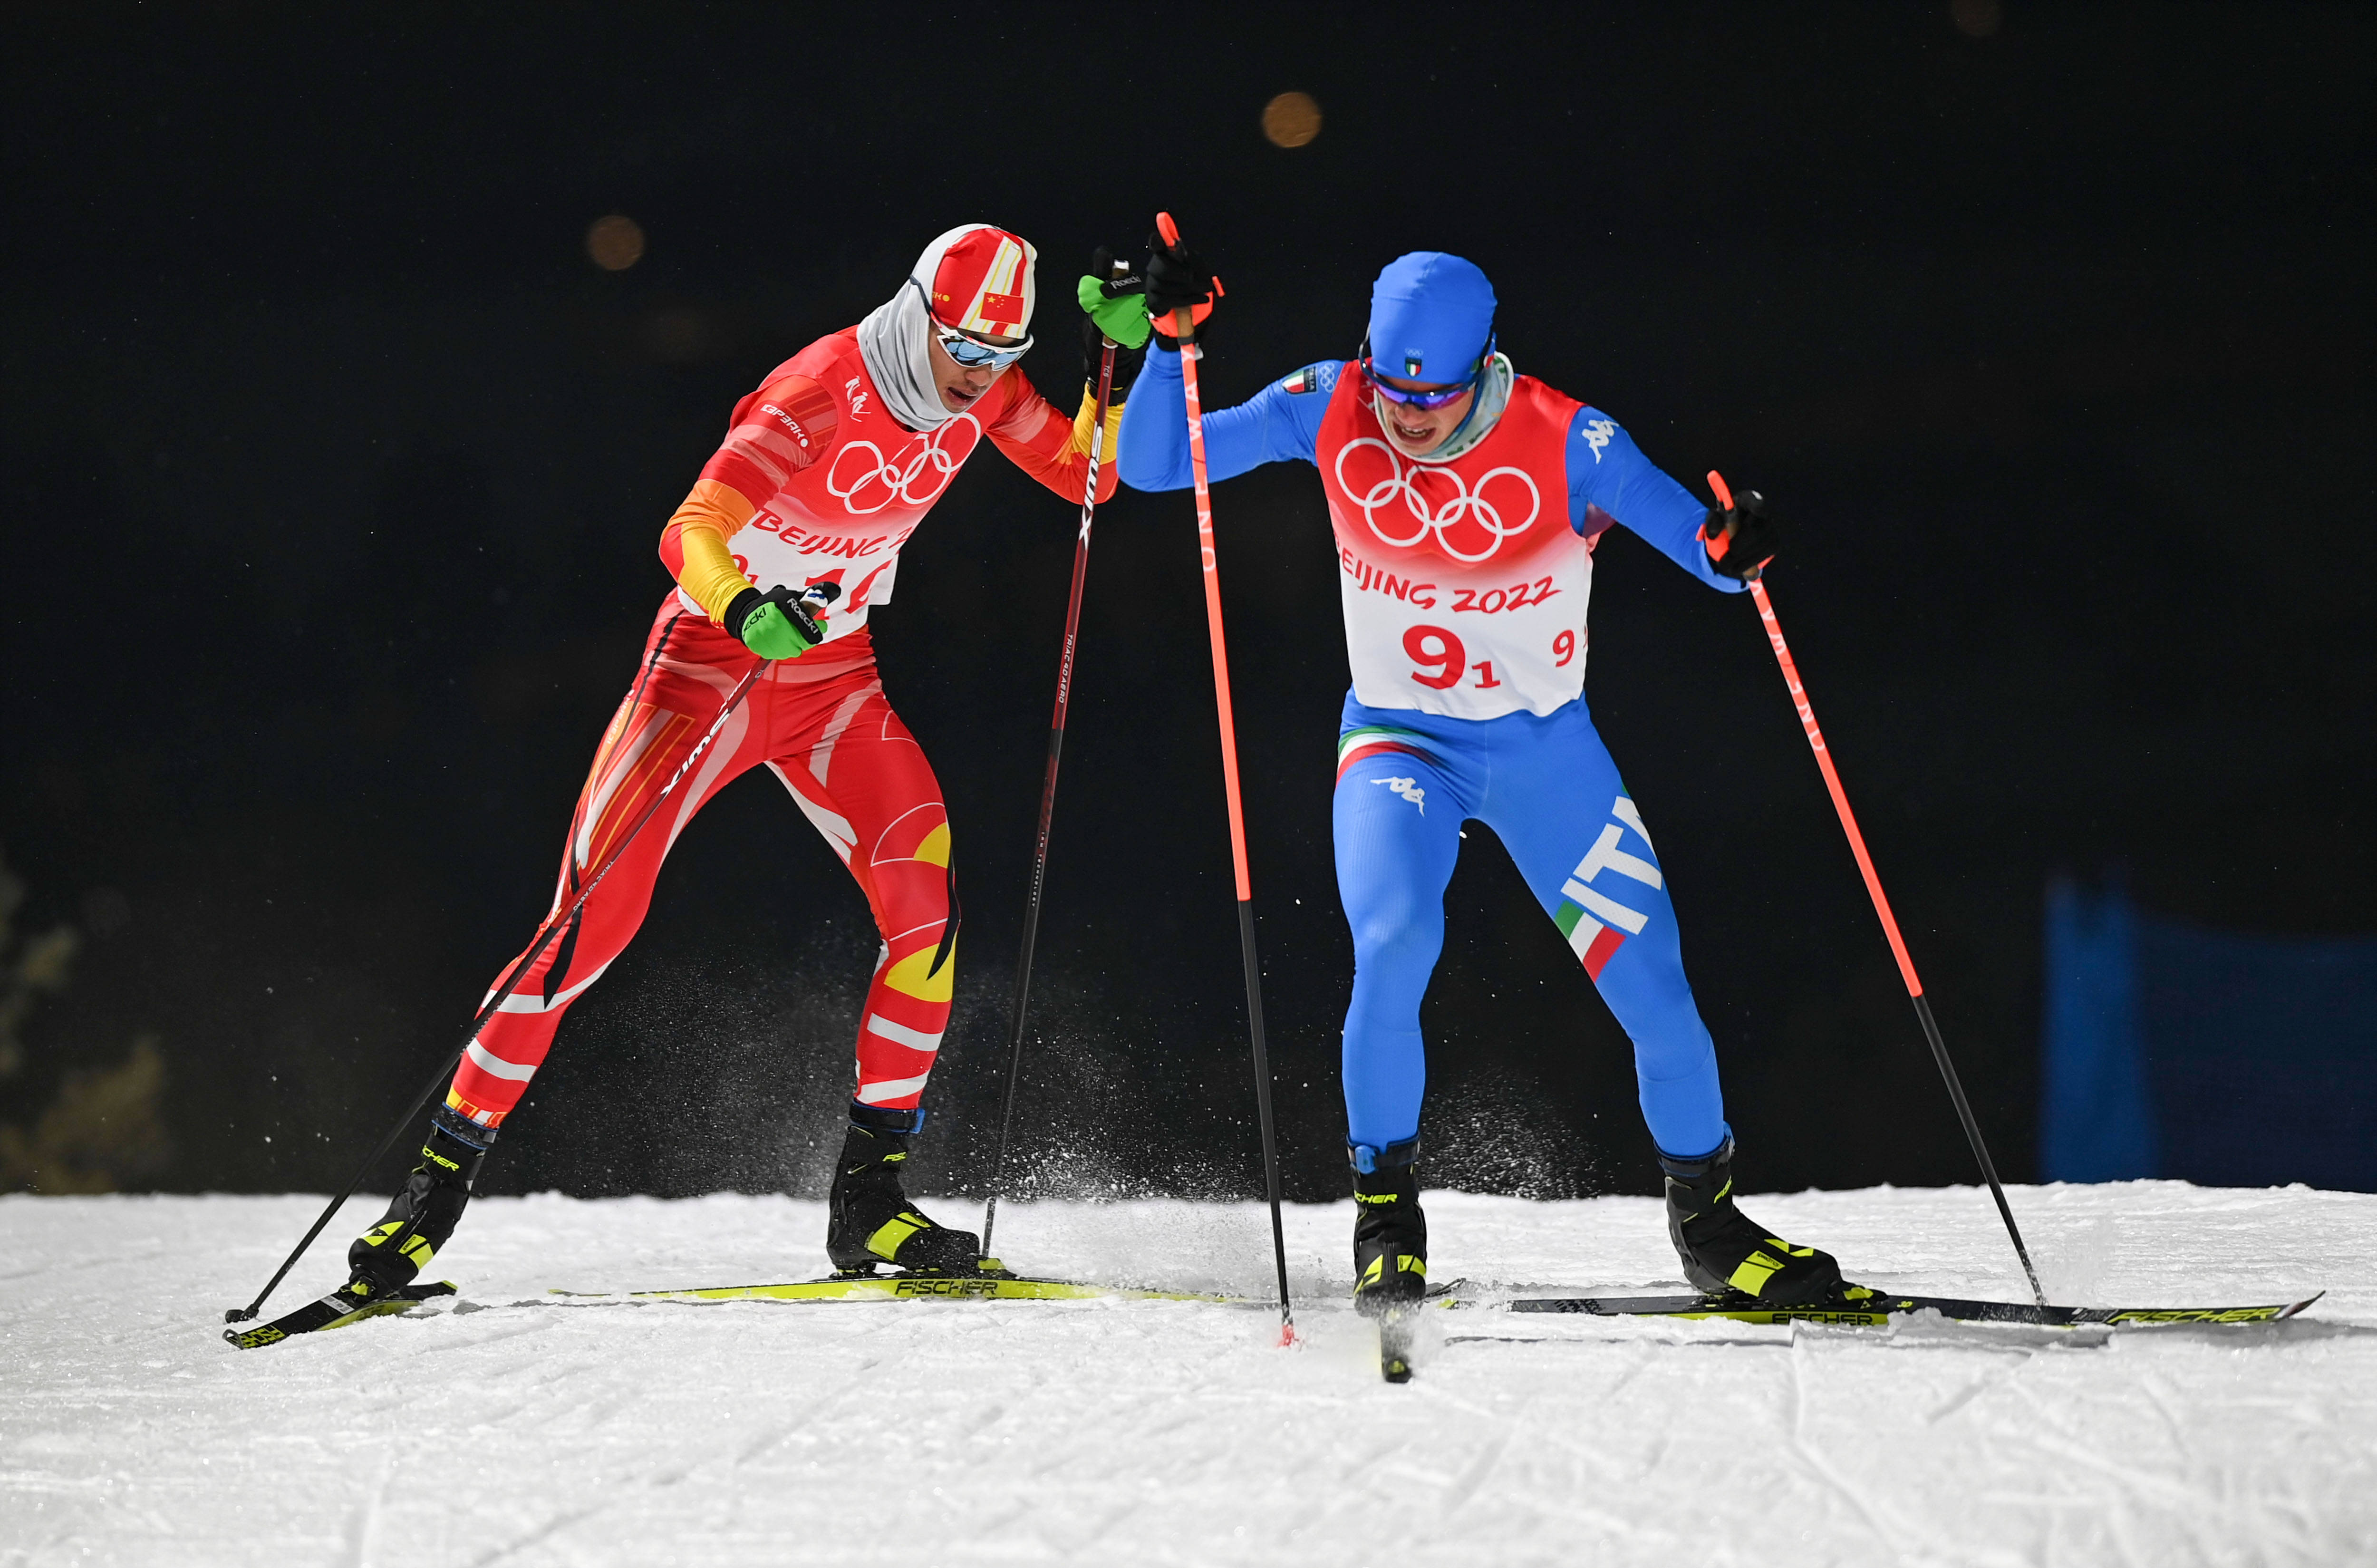 025年FIS北欧世界滑雪锦标赛官方LOGO公布'